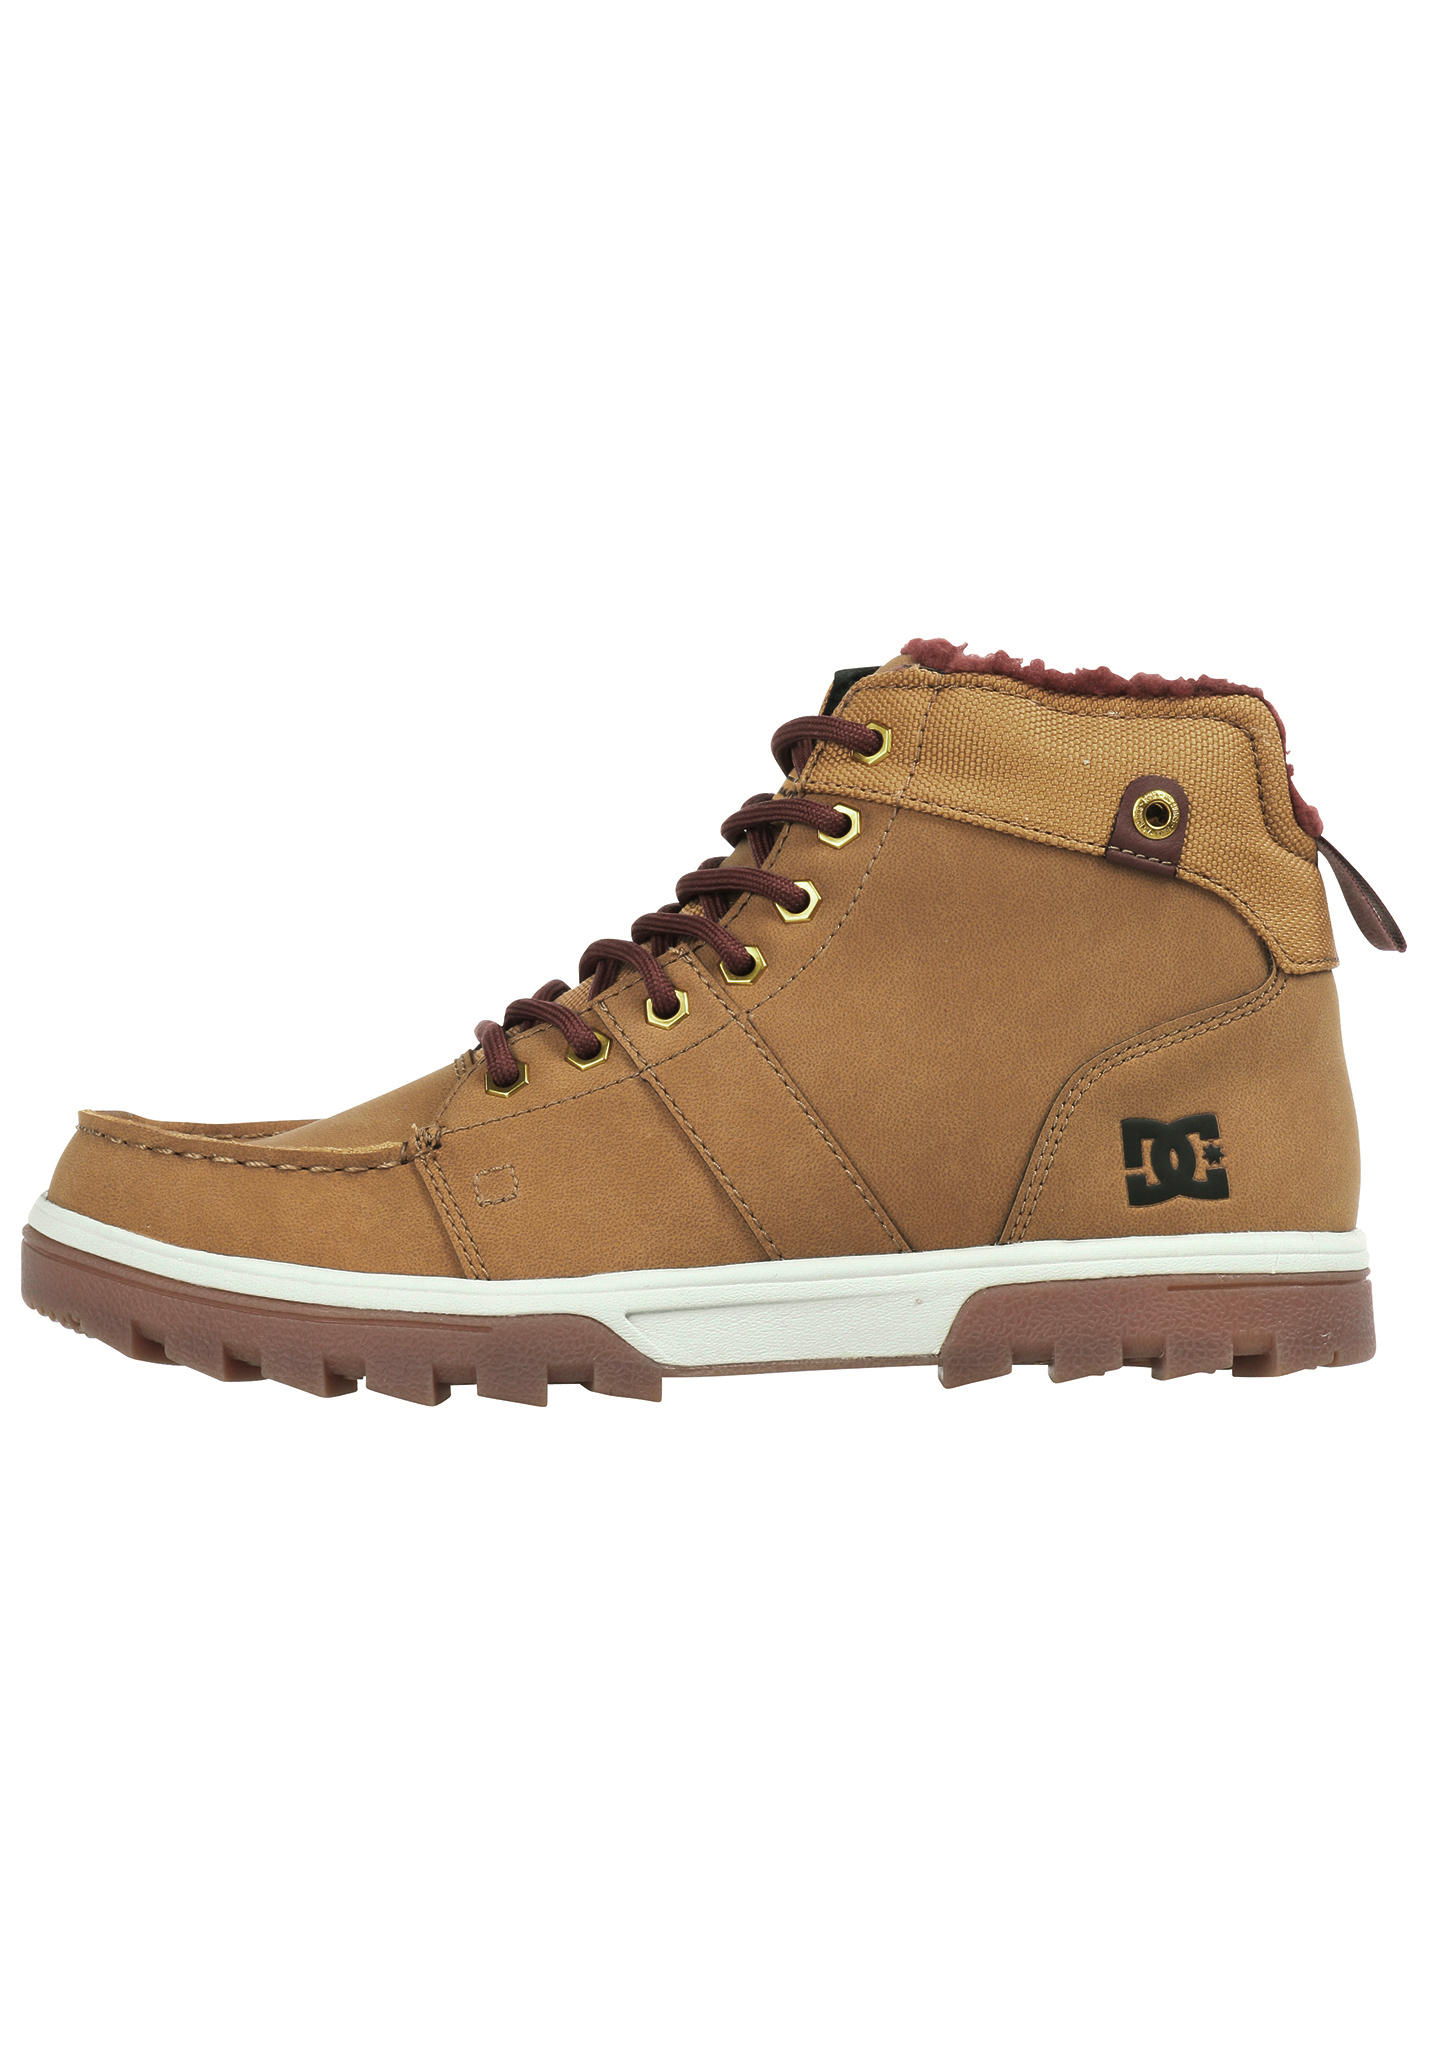 DC Woodland Sneaker brown/brown/brown 47